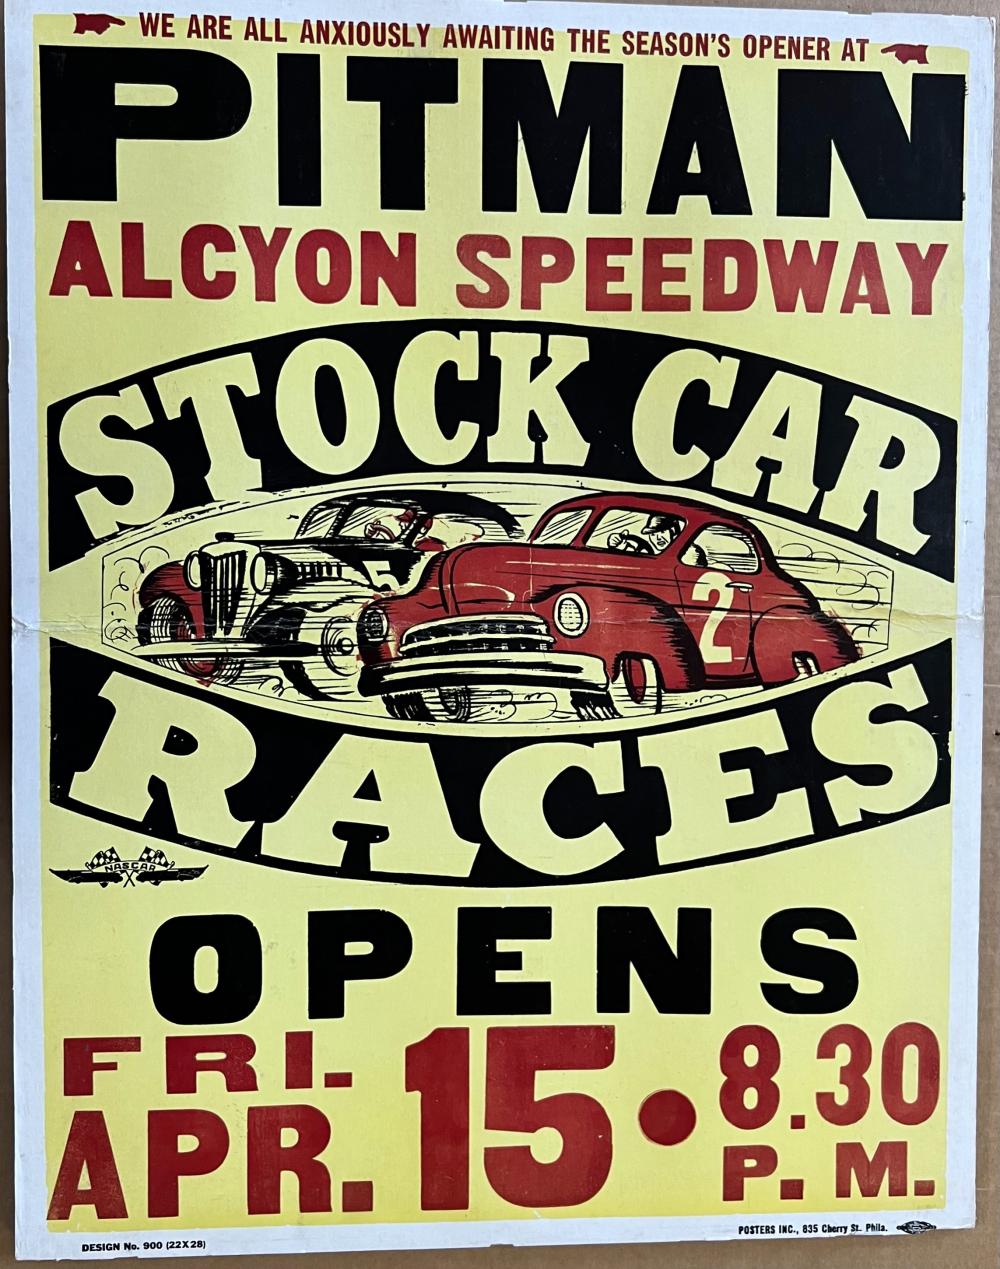 PITMAN, ALCYON NJ STOCK CAR RACES